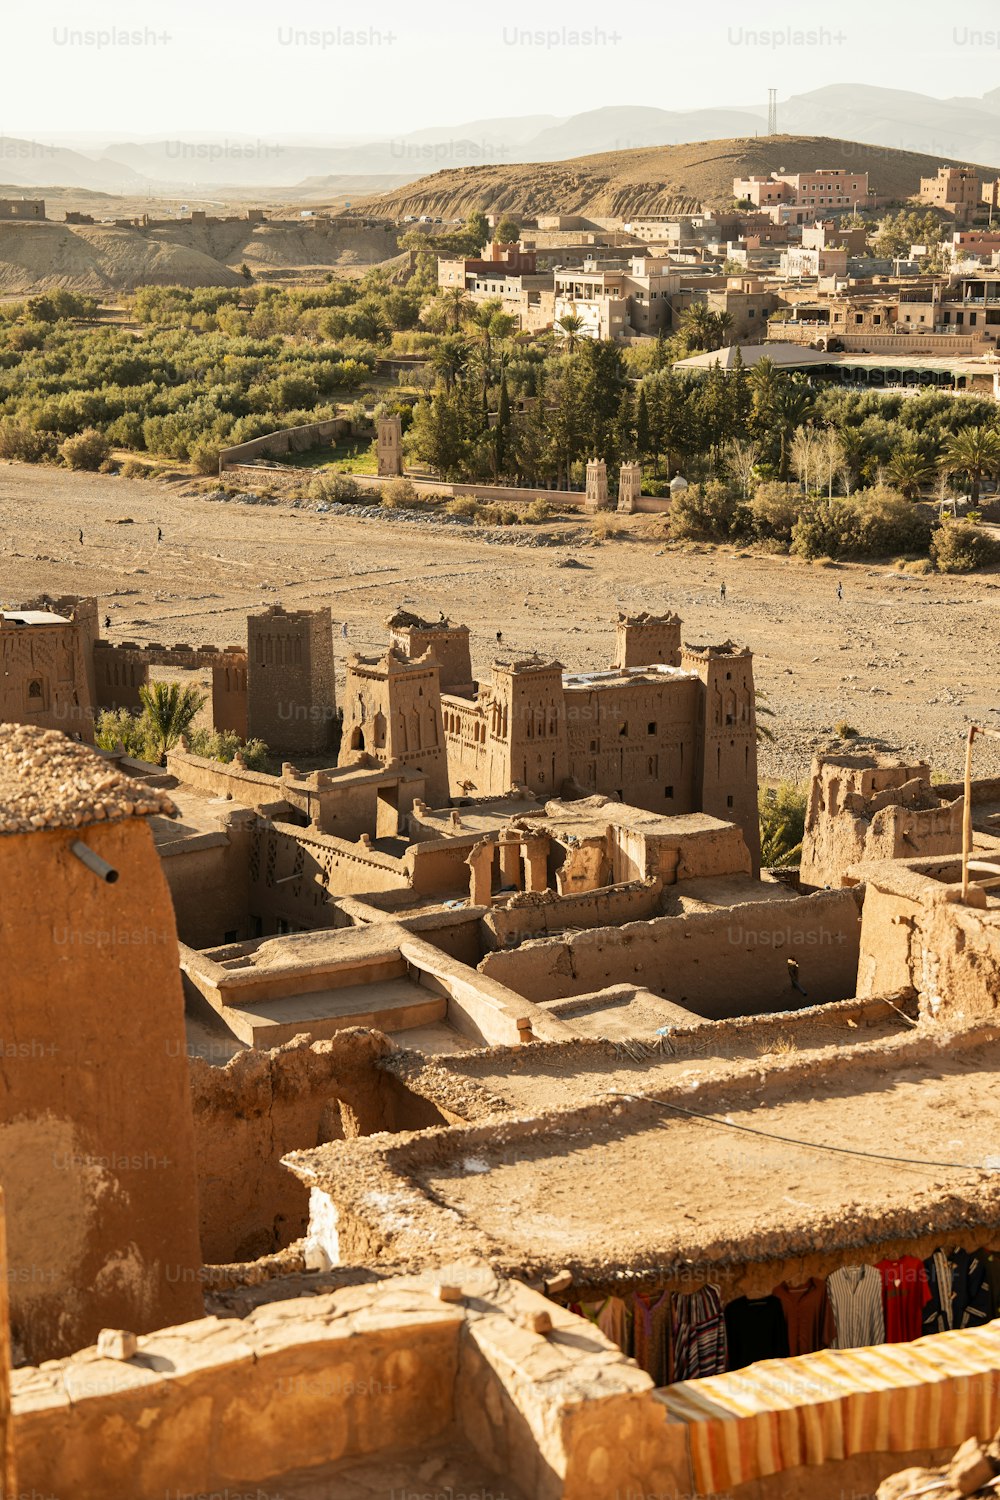 uma vista de uma aldeia no deserto